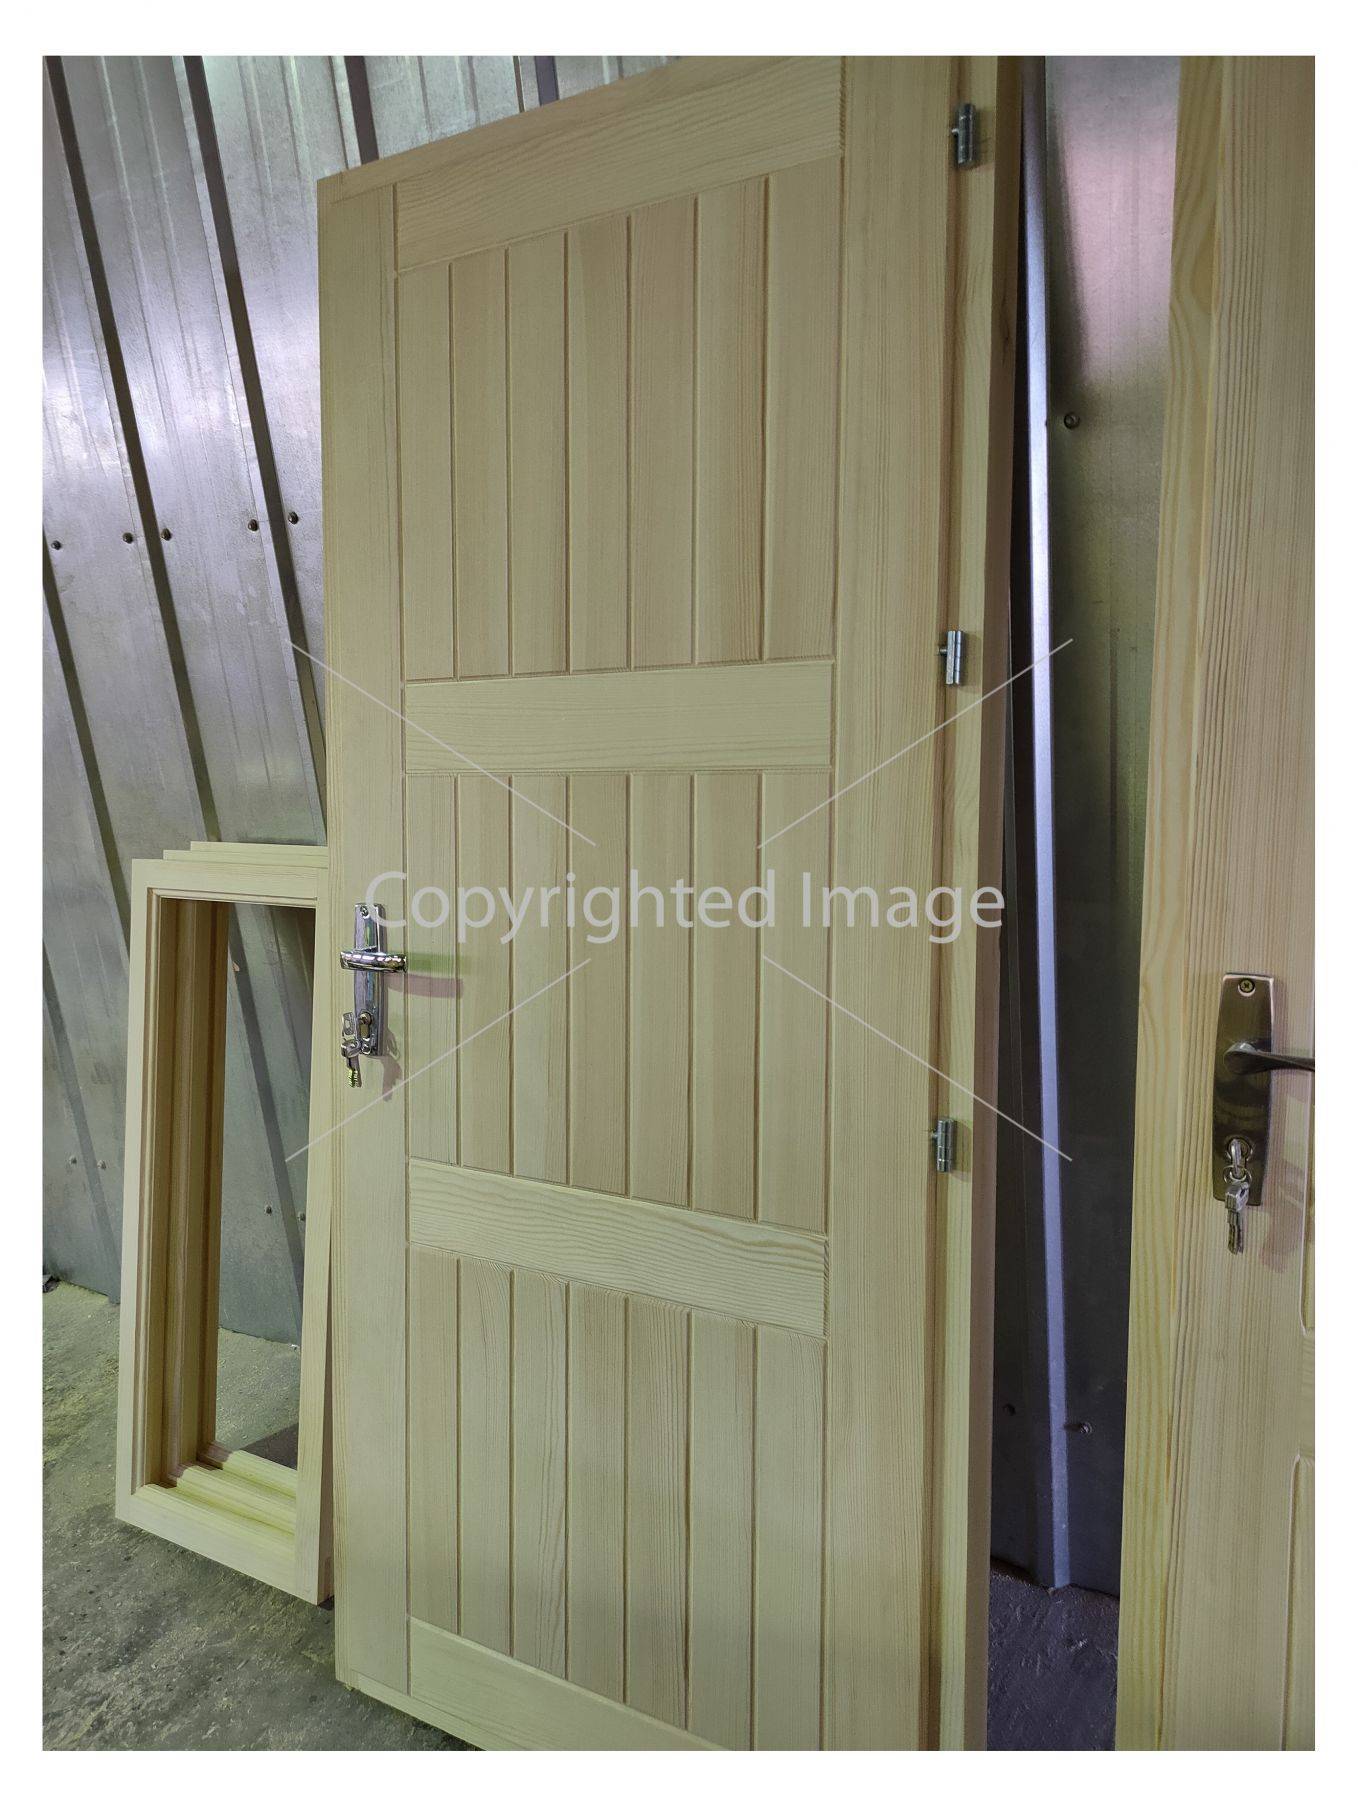 Входные деревянные двери для частного дома и квартиры — багатство вариантов